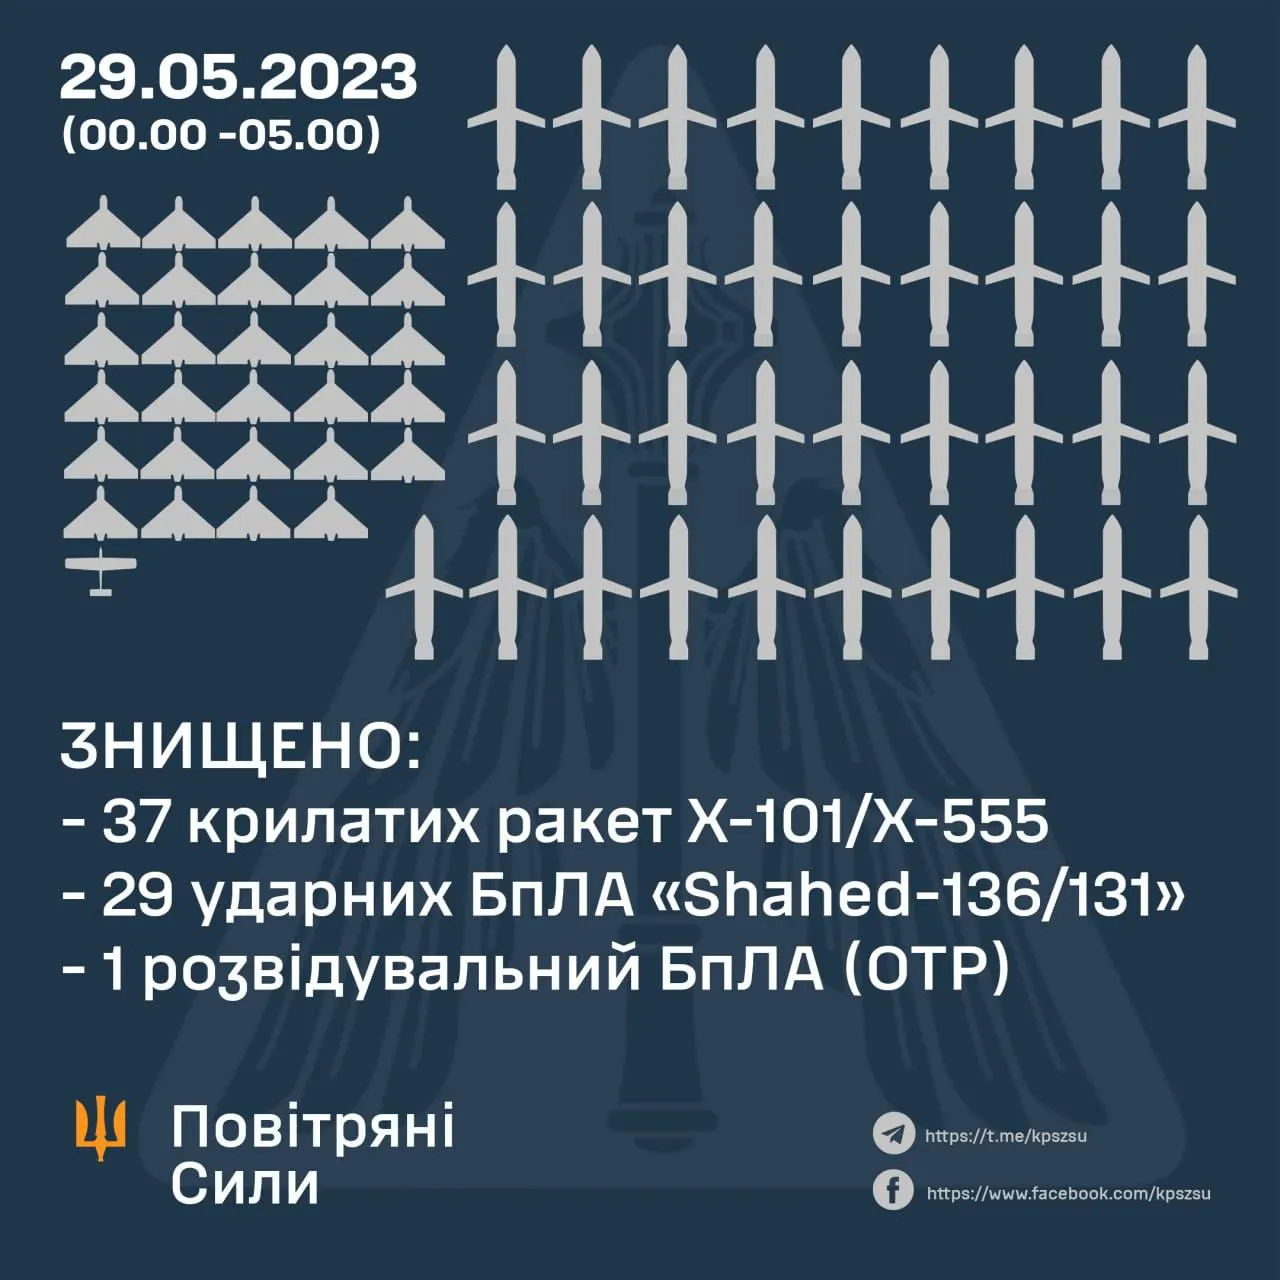 Сбитые воздушные цели над Украиной / Инфографика Воздушных сил